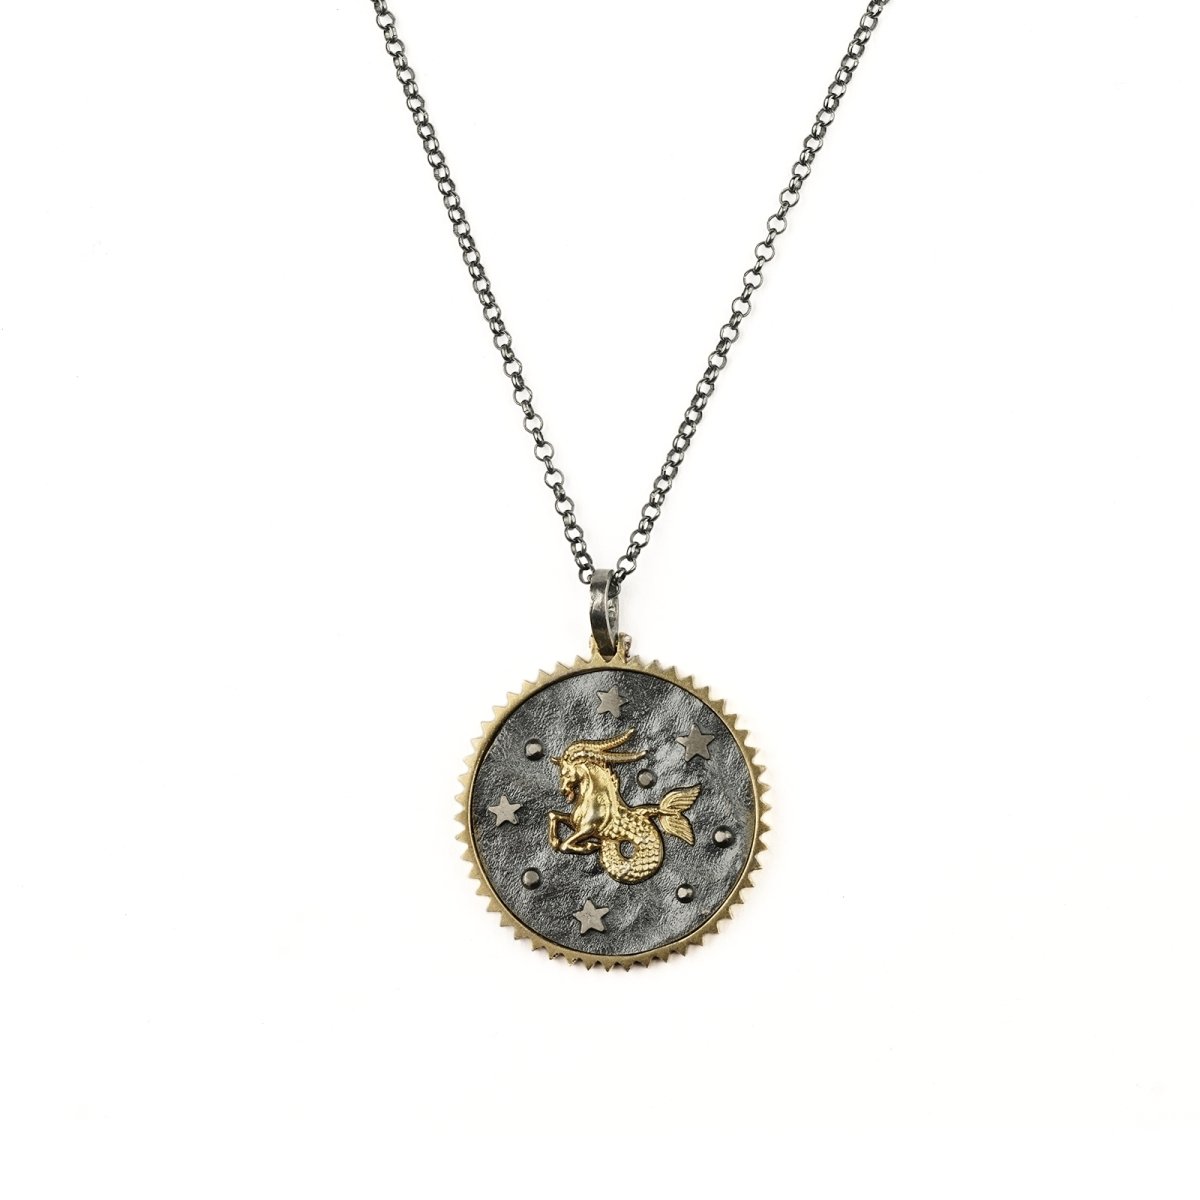 Zodiac Necklace "Capricorn" - Pregomesh